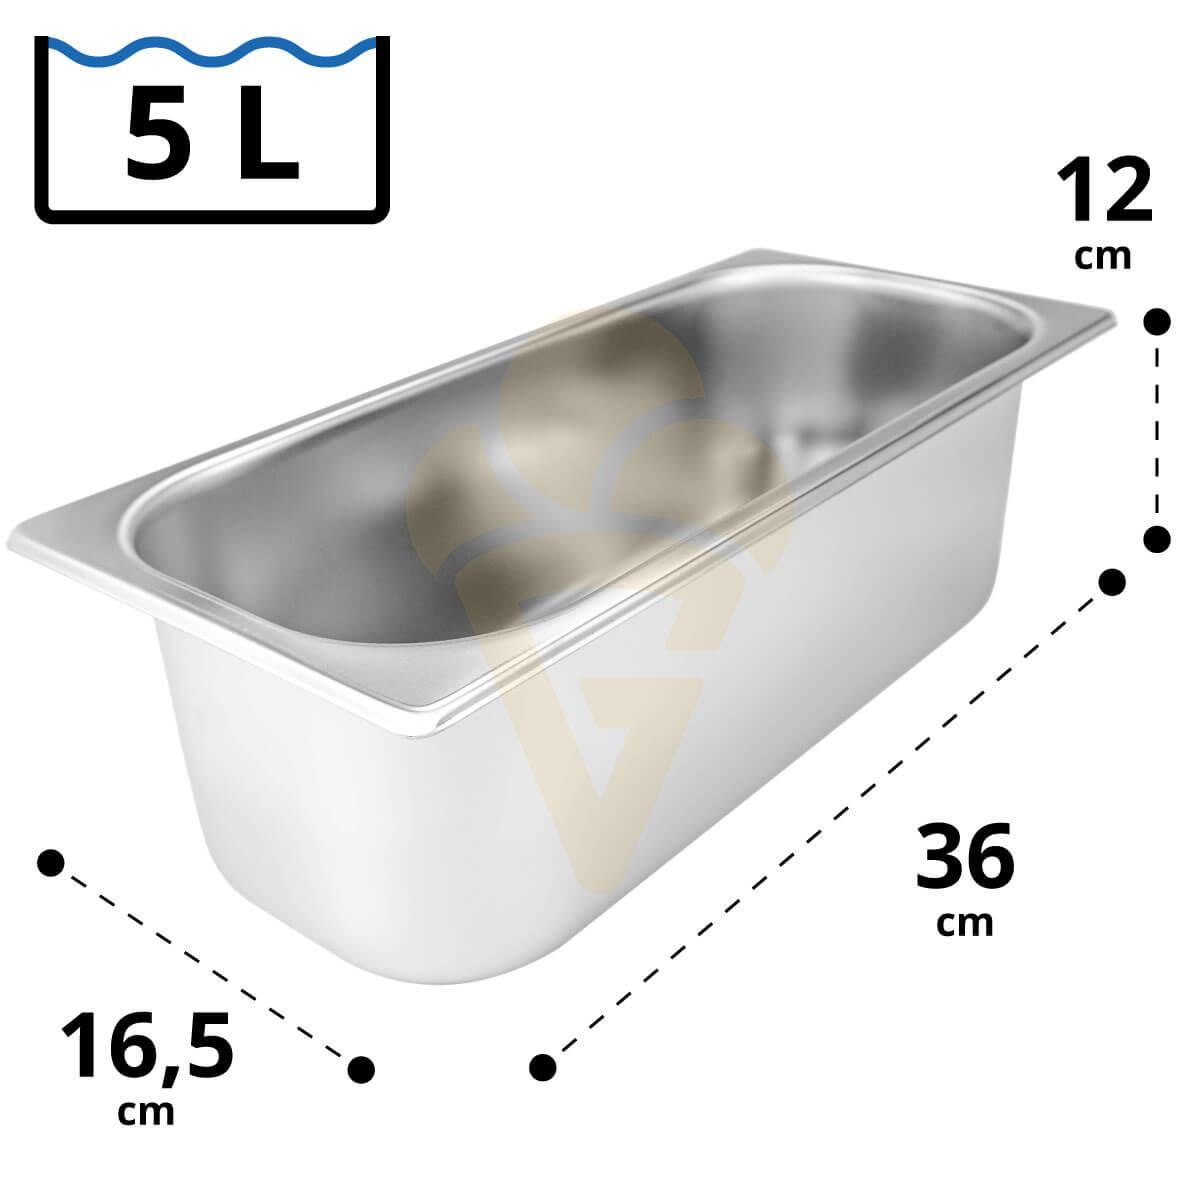 5 Liter Eisbehälter 36 x 16,5 x 12 cm